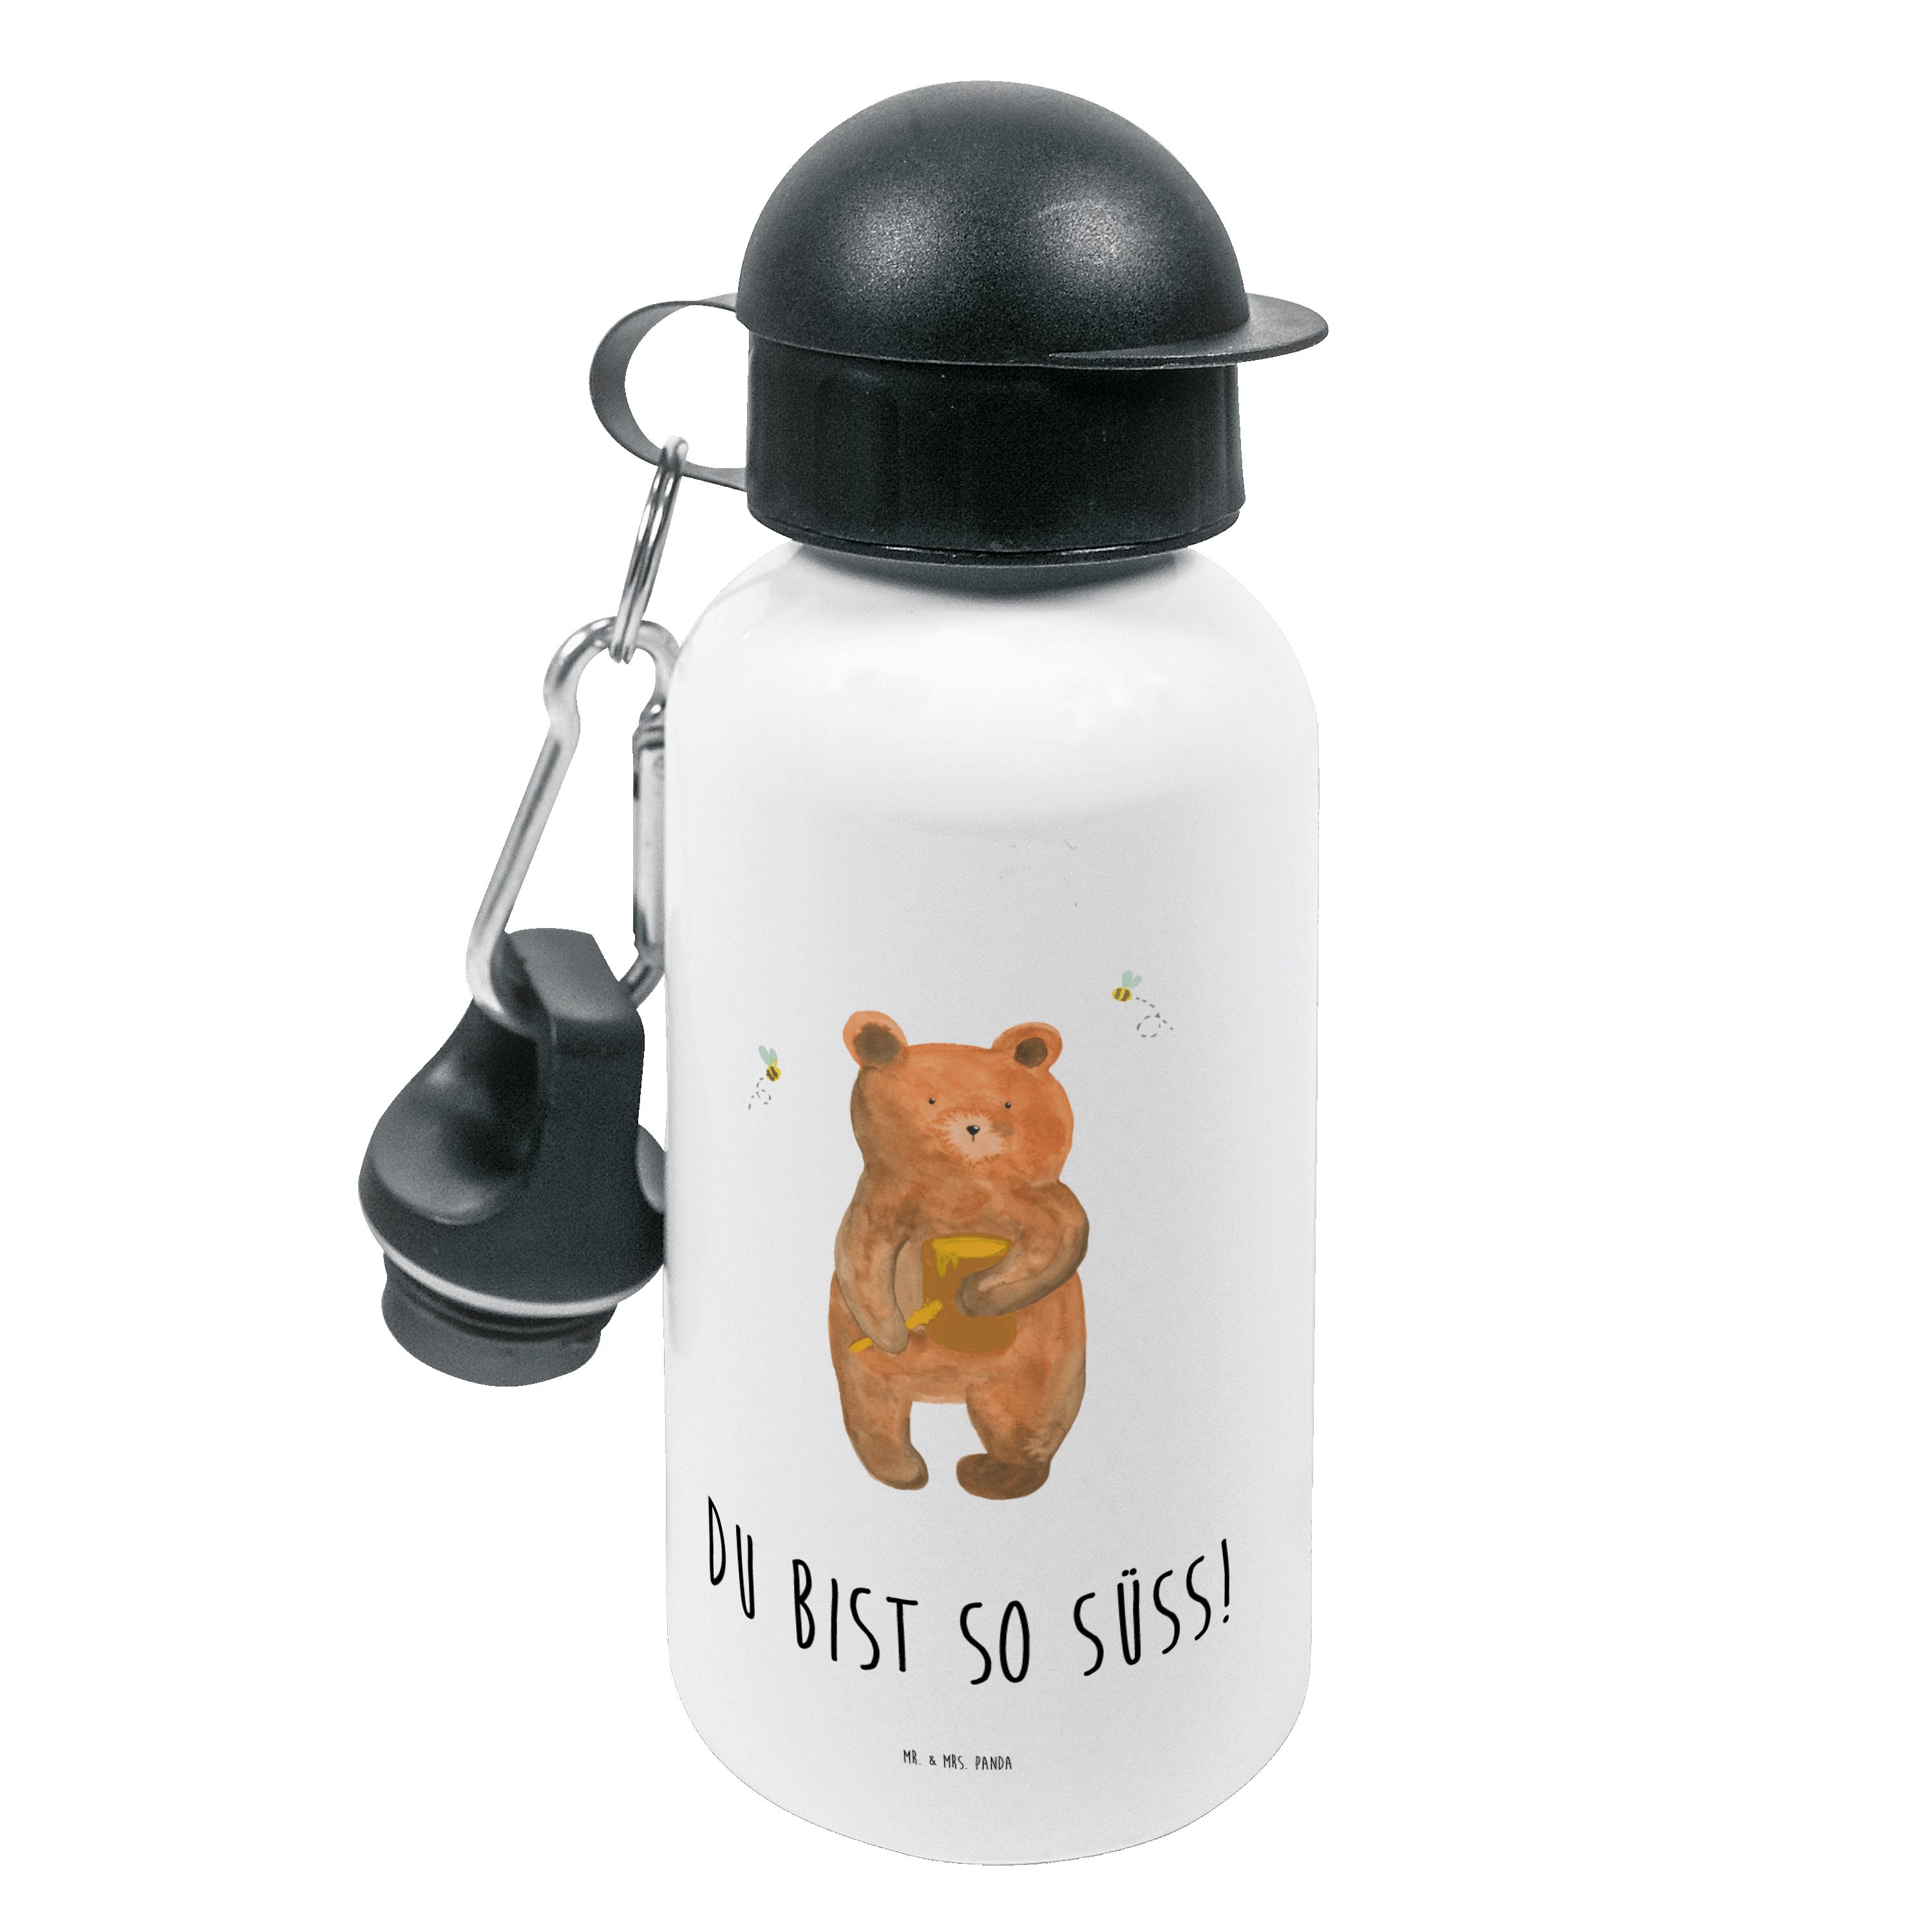 Mr. & Mrs. Panda Trinkflasche Honigbär - Weiß - Geschenk, Teddybär, Kinderflasche, Teddy, Kindertri